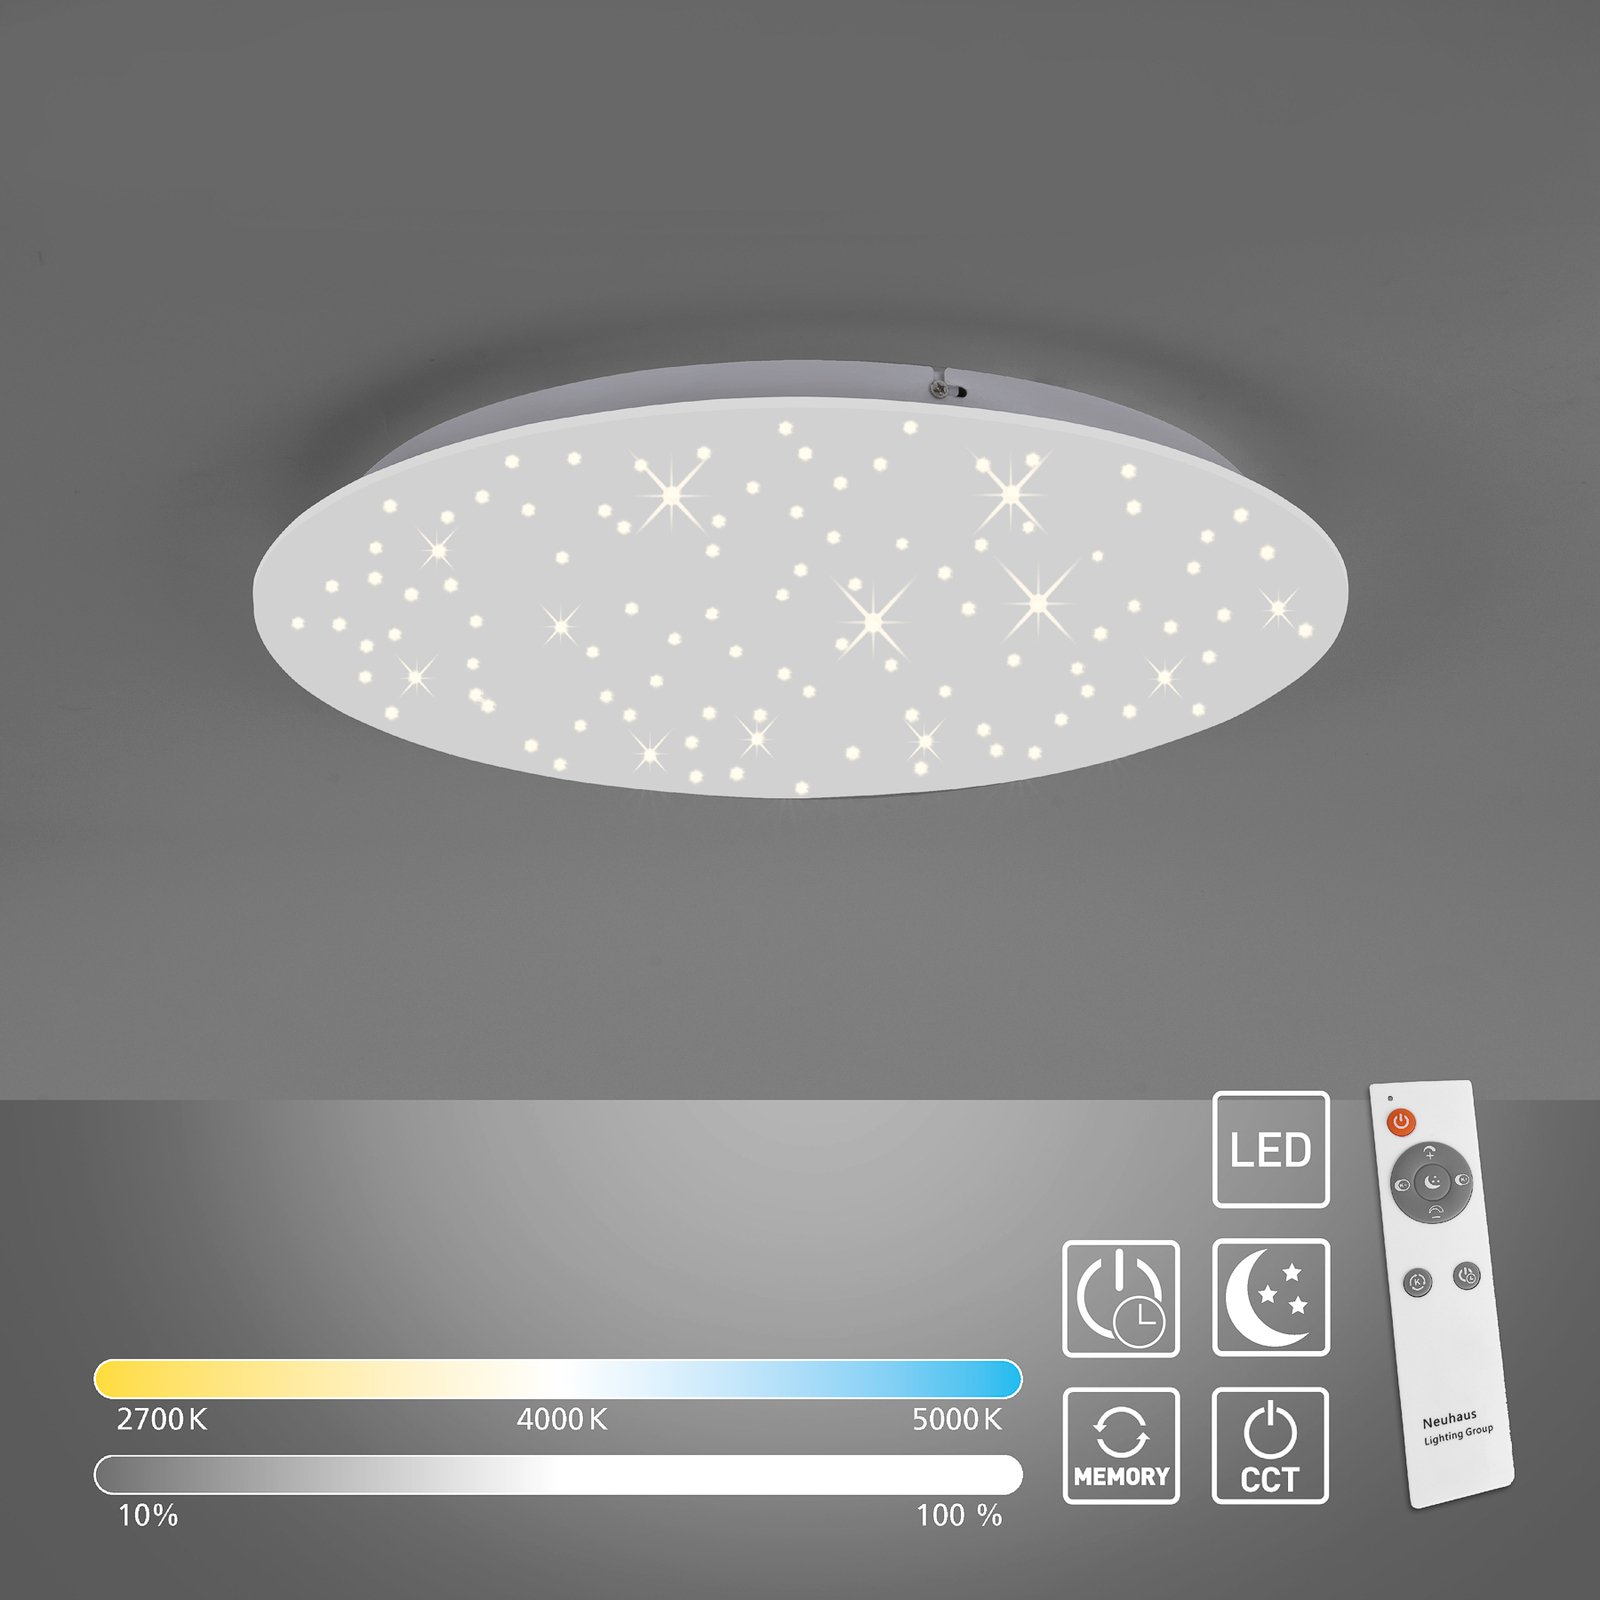 LED lubinis šviestuvas "Sparkle CCT dim white" Ø 48cm